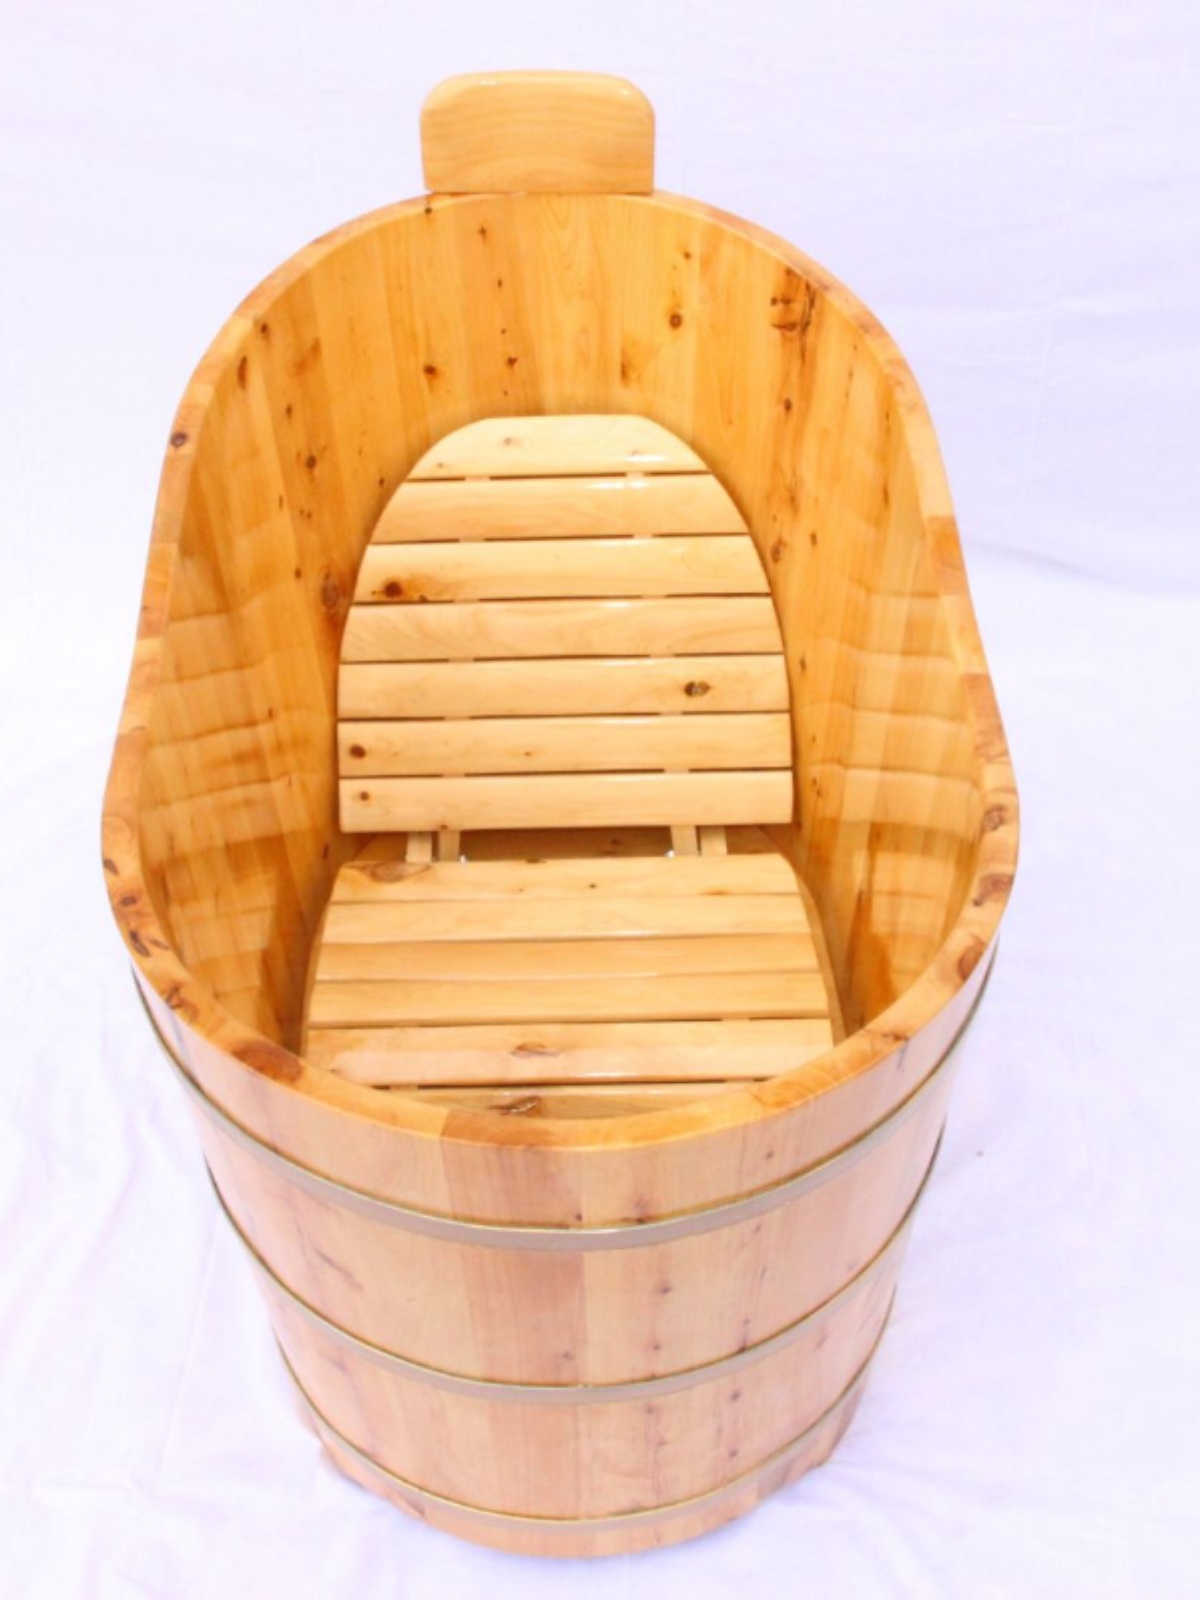 木桶内座椅 浴缸坐垫 泡澡桶椅子 内凳 坐凳 大木桶凳子 折叠加厚